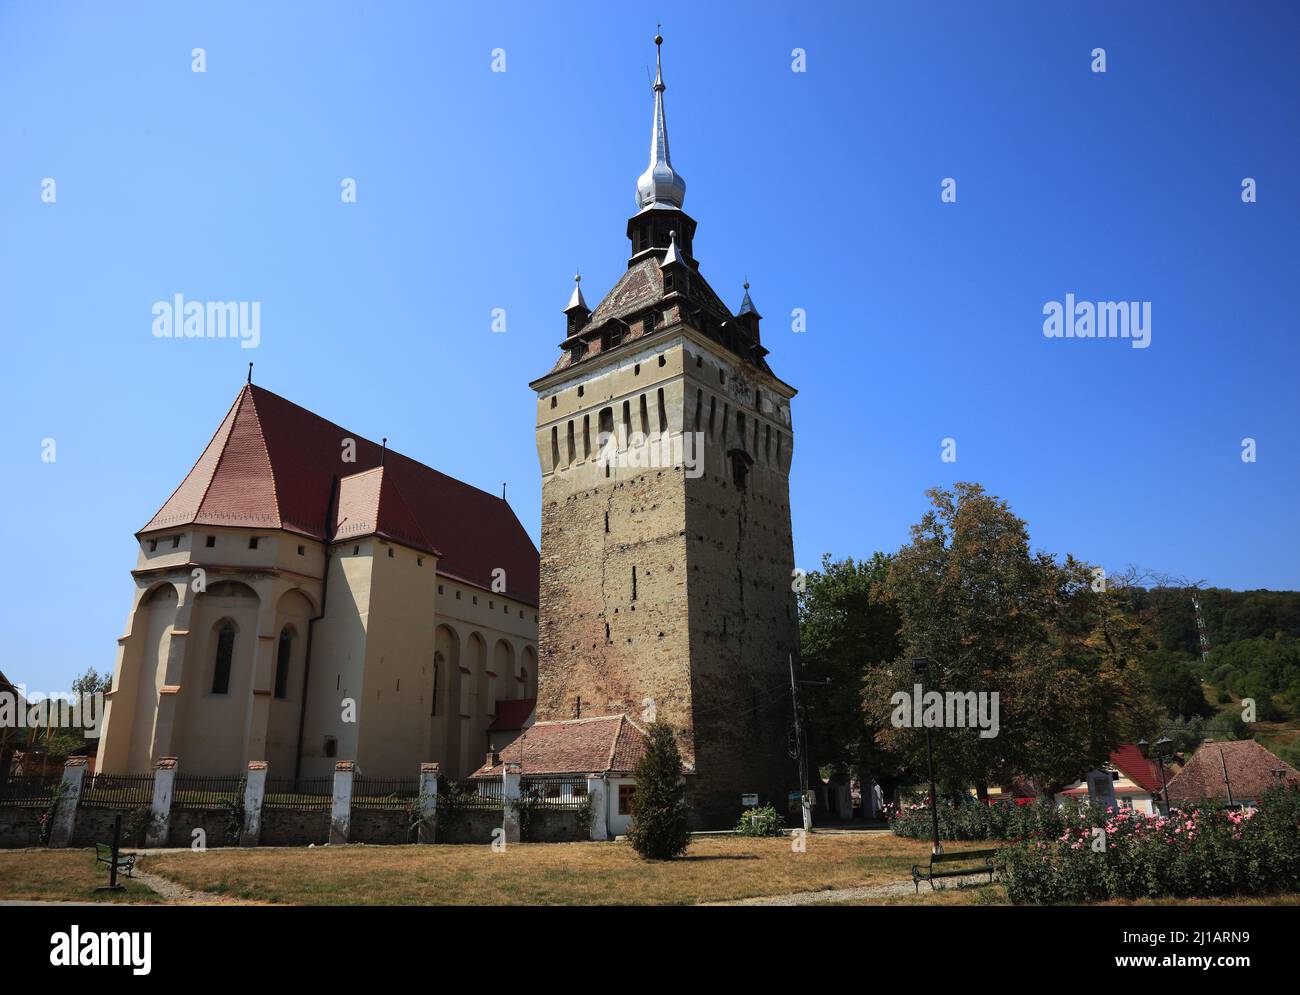 Im gotischen Stil gebaute evangelische Kirche aus dem Jahr 1496 in Saschiz, deutsch Keisd, ist eine Gemeinde in Siebenbürgen, Rumänien im Kreis Mures Stock Photo